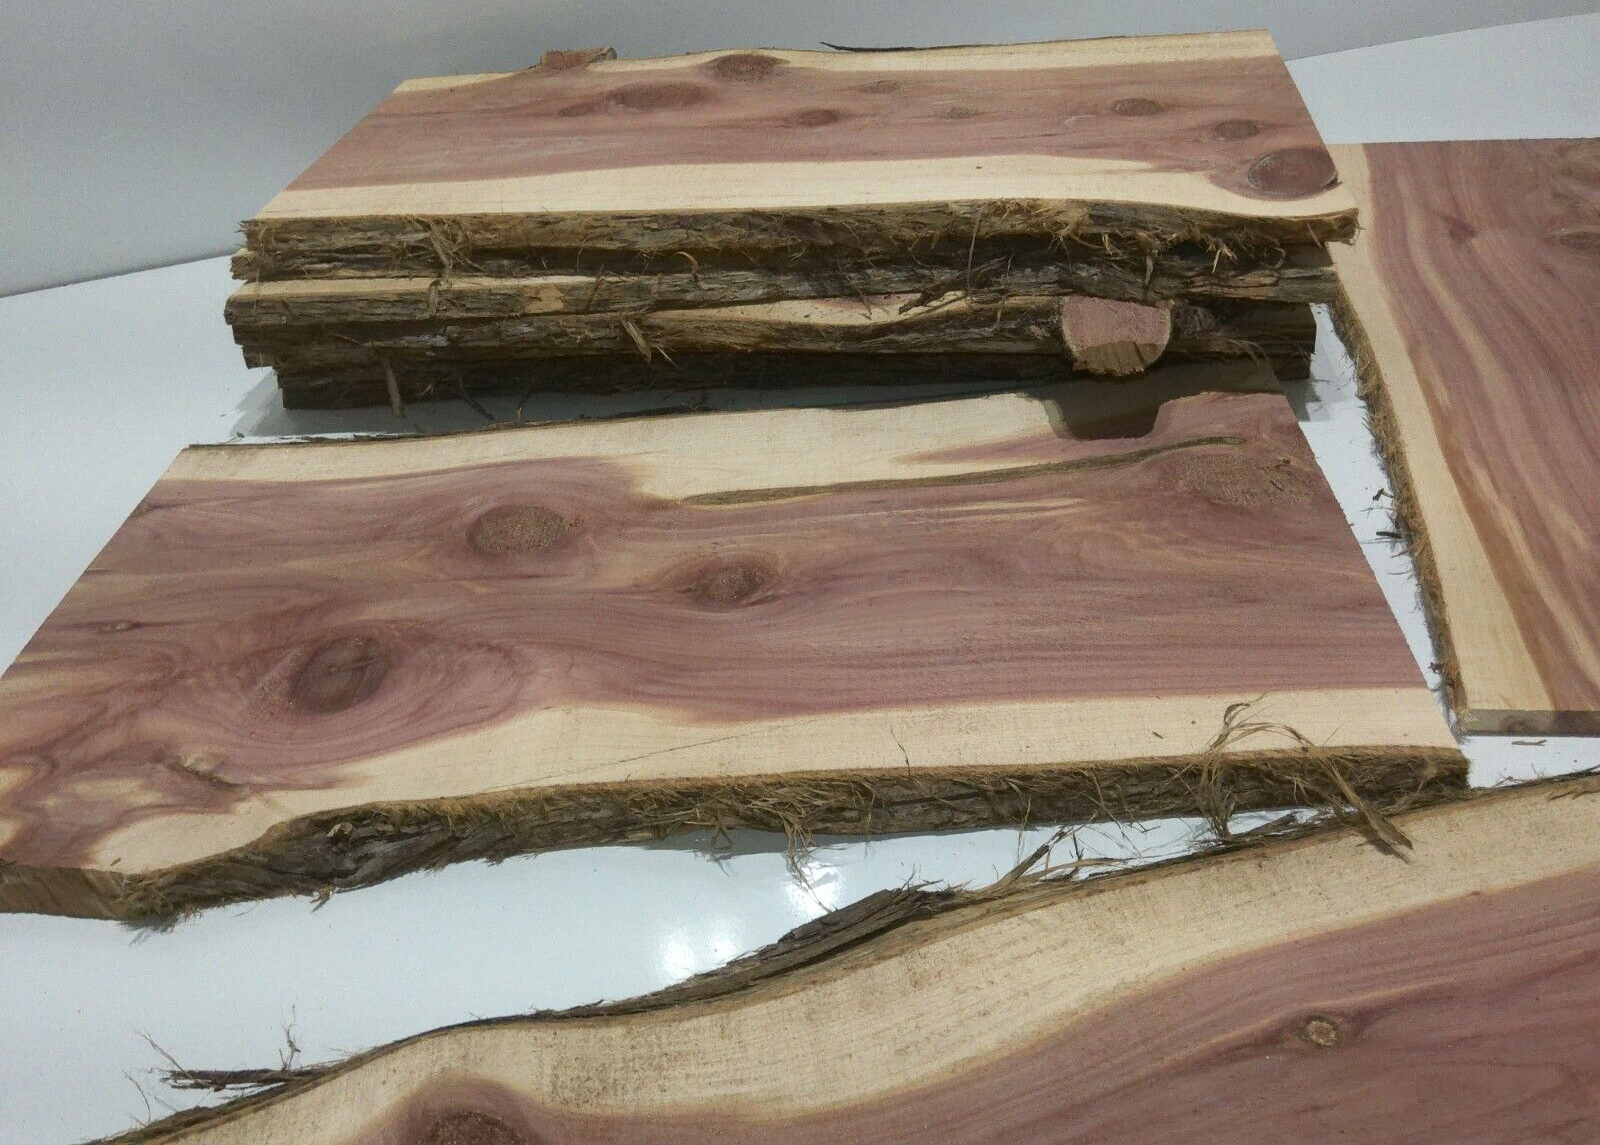 1 Milled Kiln Dried Eastern Red Cedar Lumber SLAB 24" X 8-12" X 1/2" RARE Our Wood Shop - фотография #7